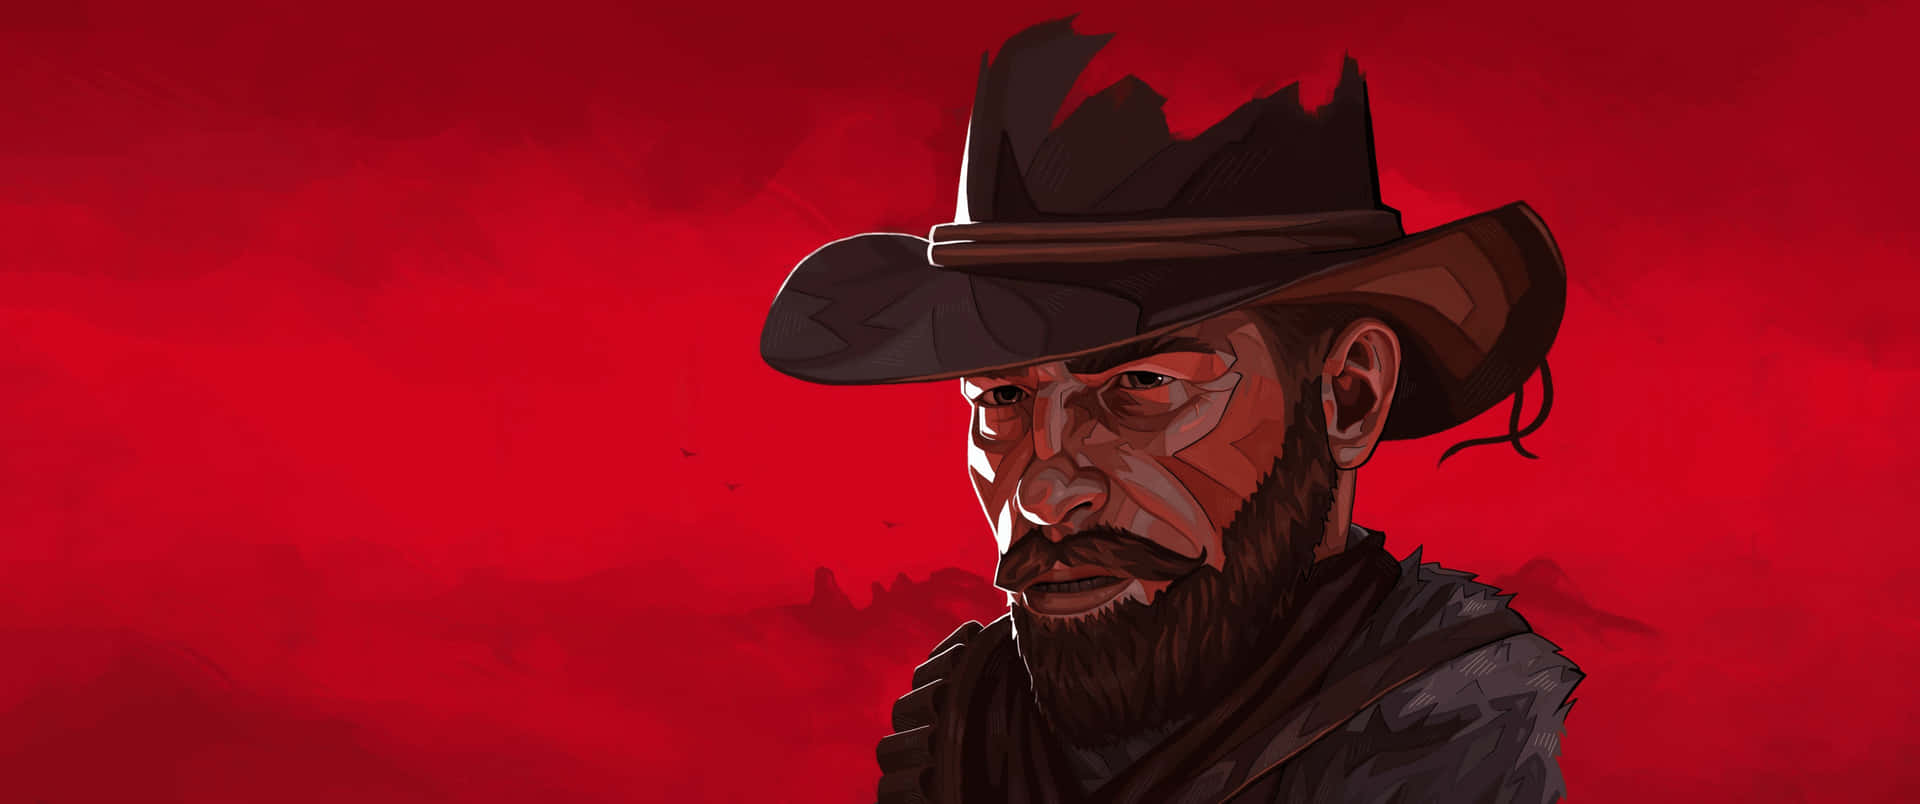 3440x1440p Red Dead Redemption 2 Background Hat Background